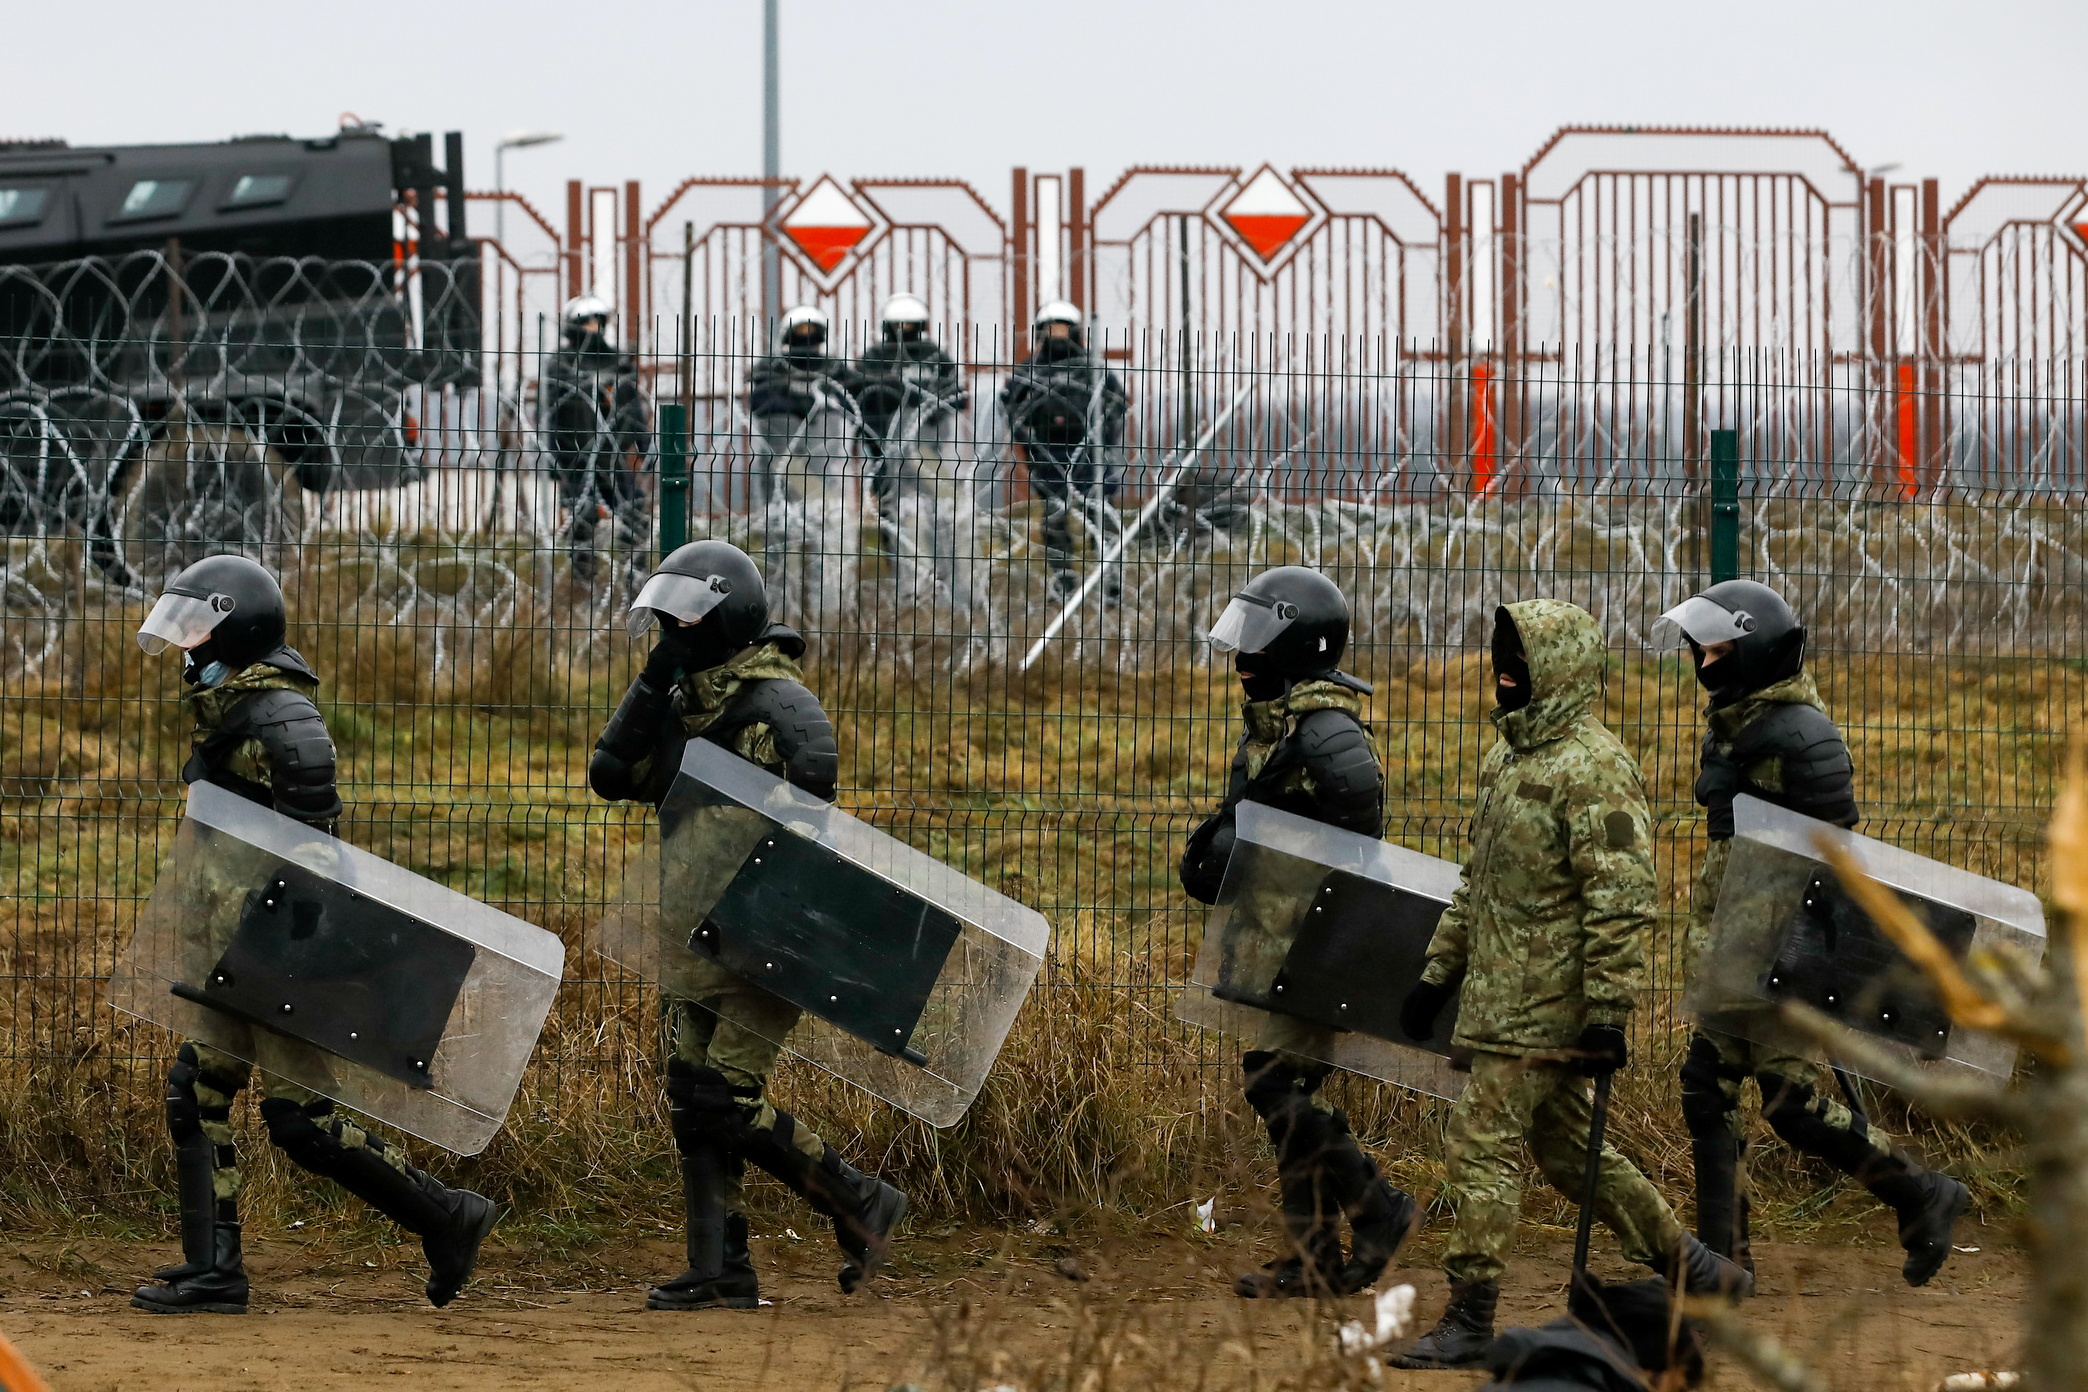 Personeli bjellorus i zbatimit të ligjit ecën në një kamp pranë pikës së kontrollit Bruzgi-Kuznica në kufirin Bjellorusiano-Polak në rajonin Grodno, Bjellorusi, 18 nëntor 2021. REUTERS/Kacper Pempel